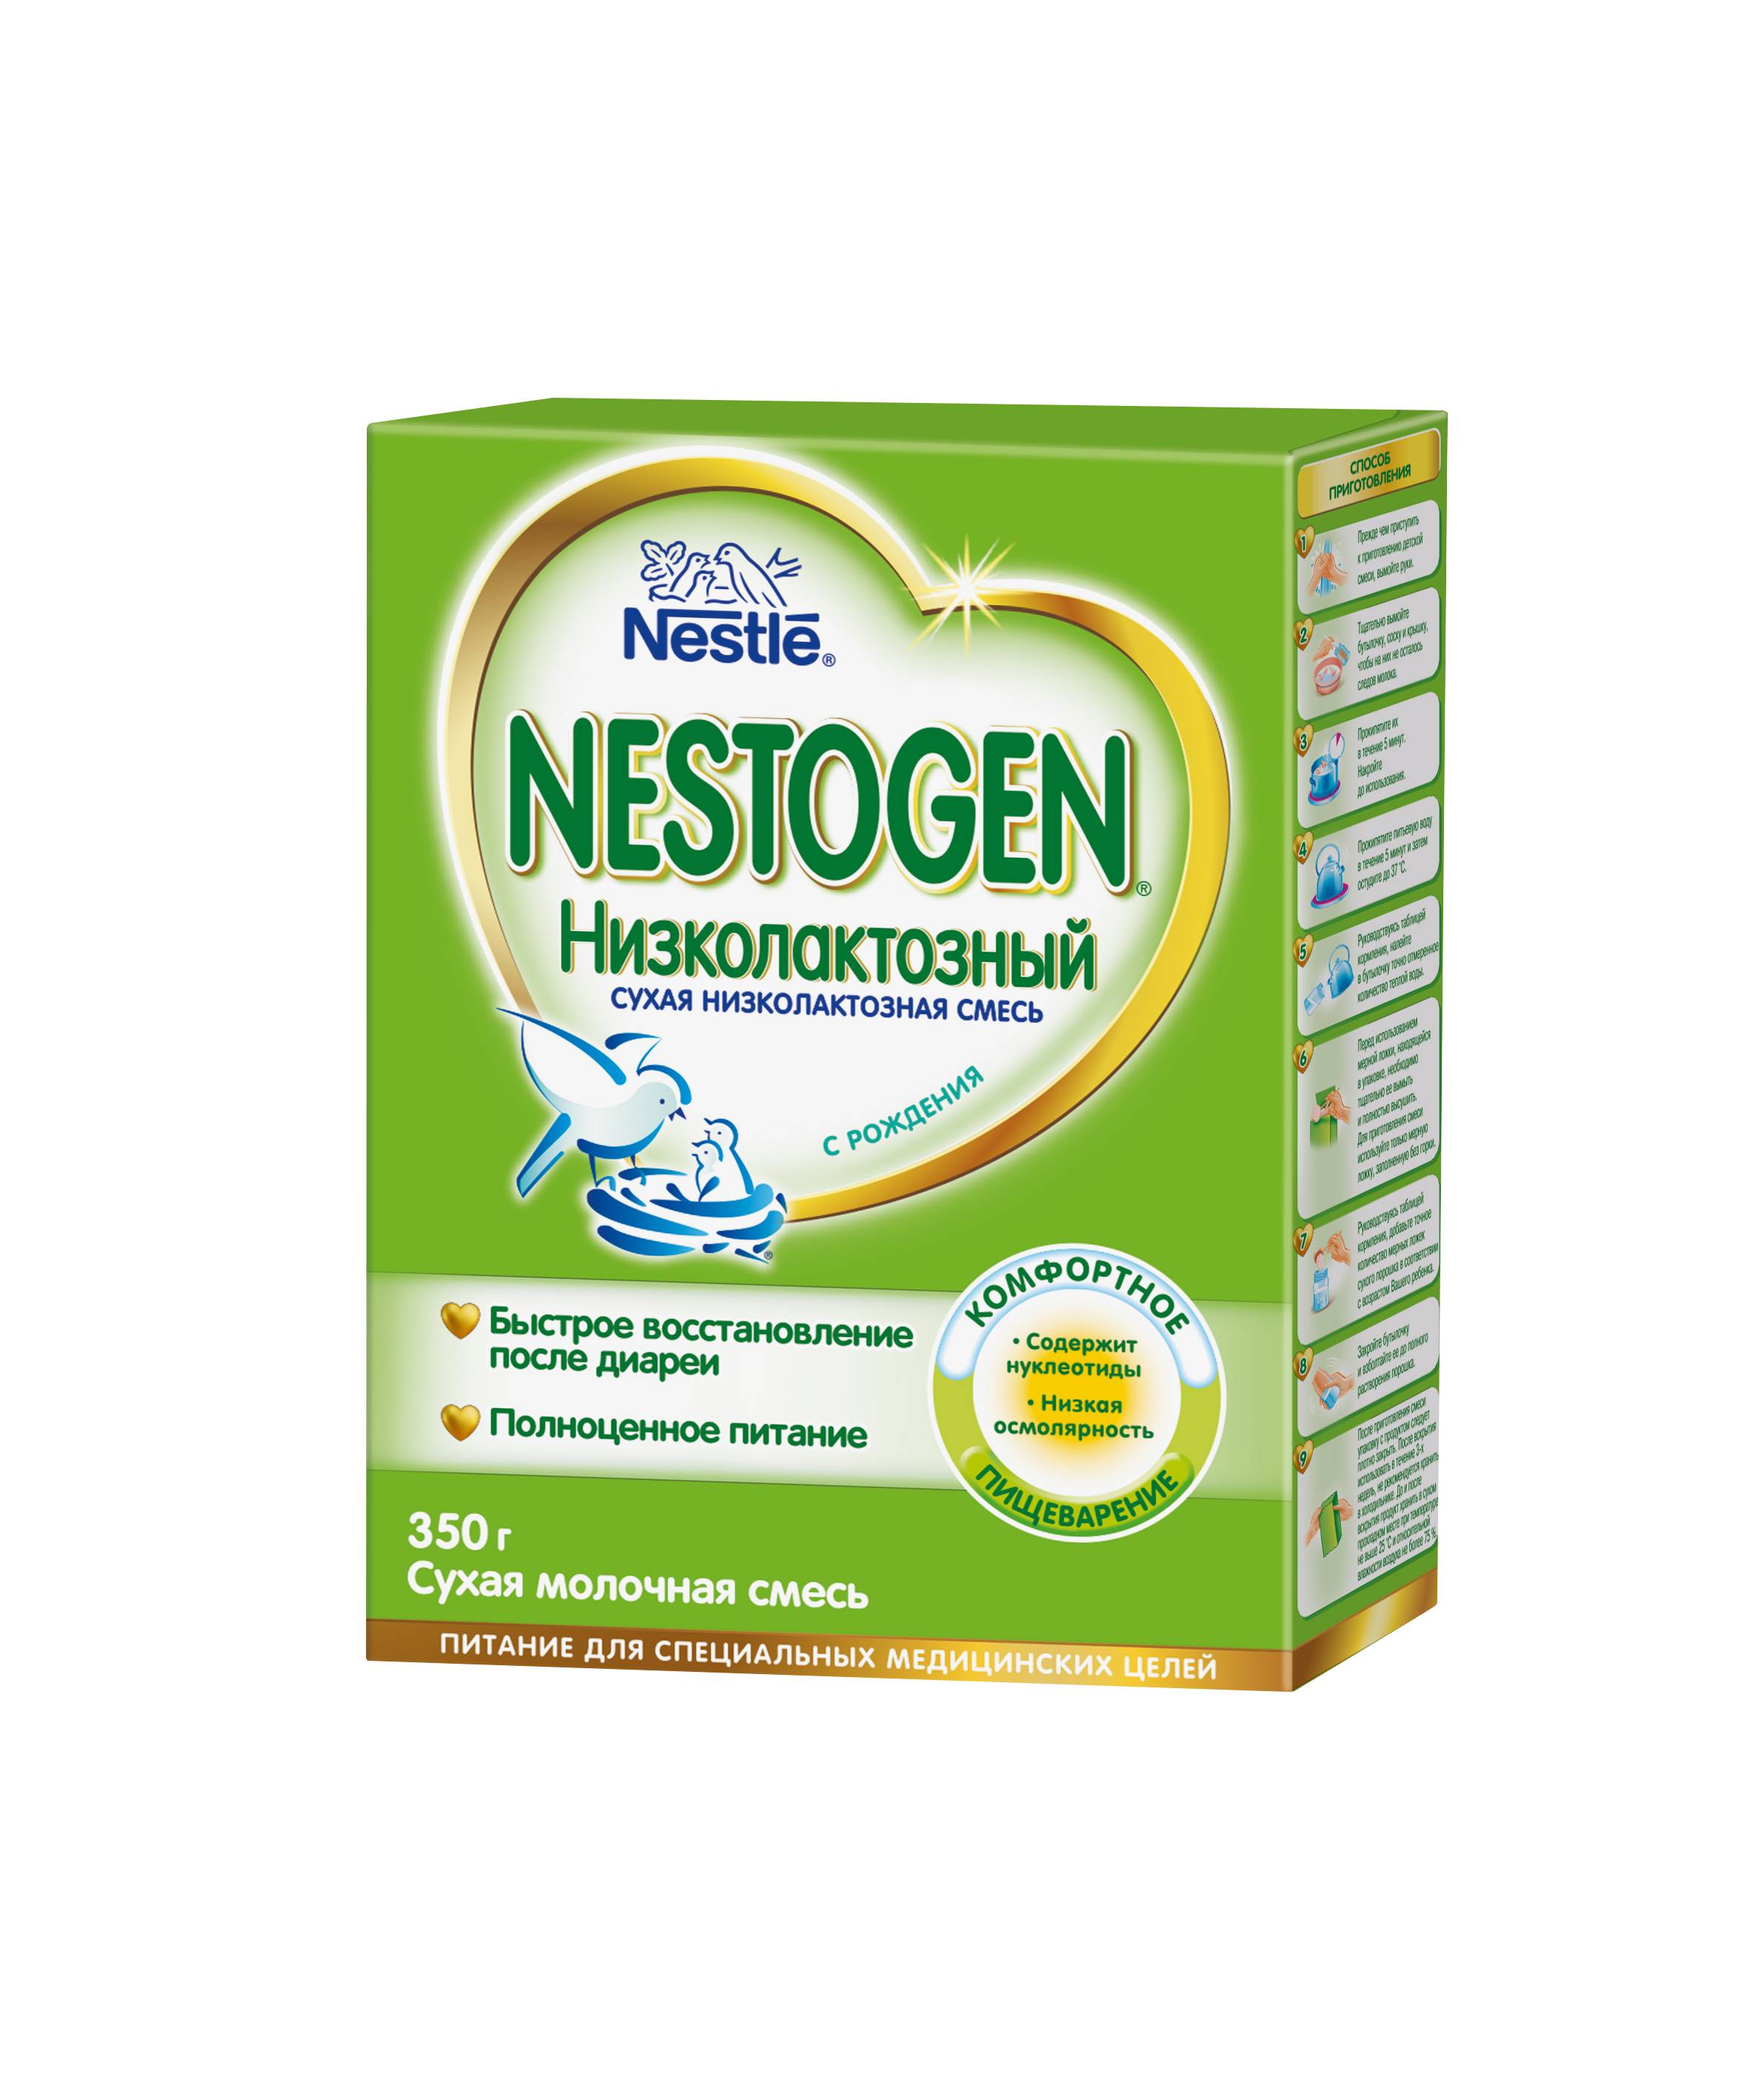 Смесь Nestogen (Nestlé) Низколактозный (с рождения) 350 г